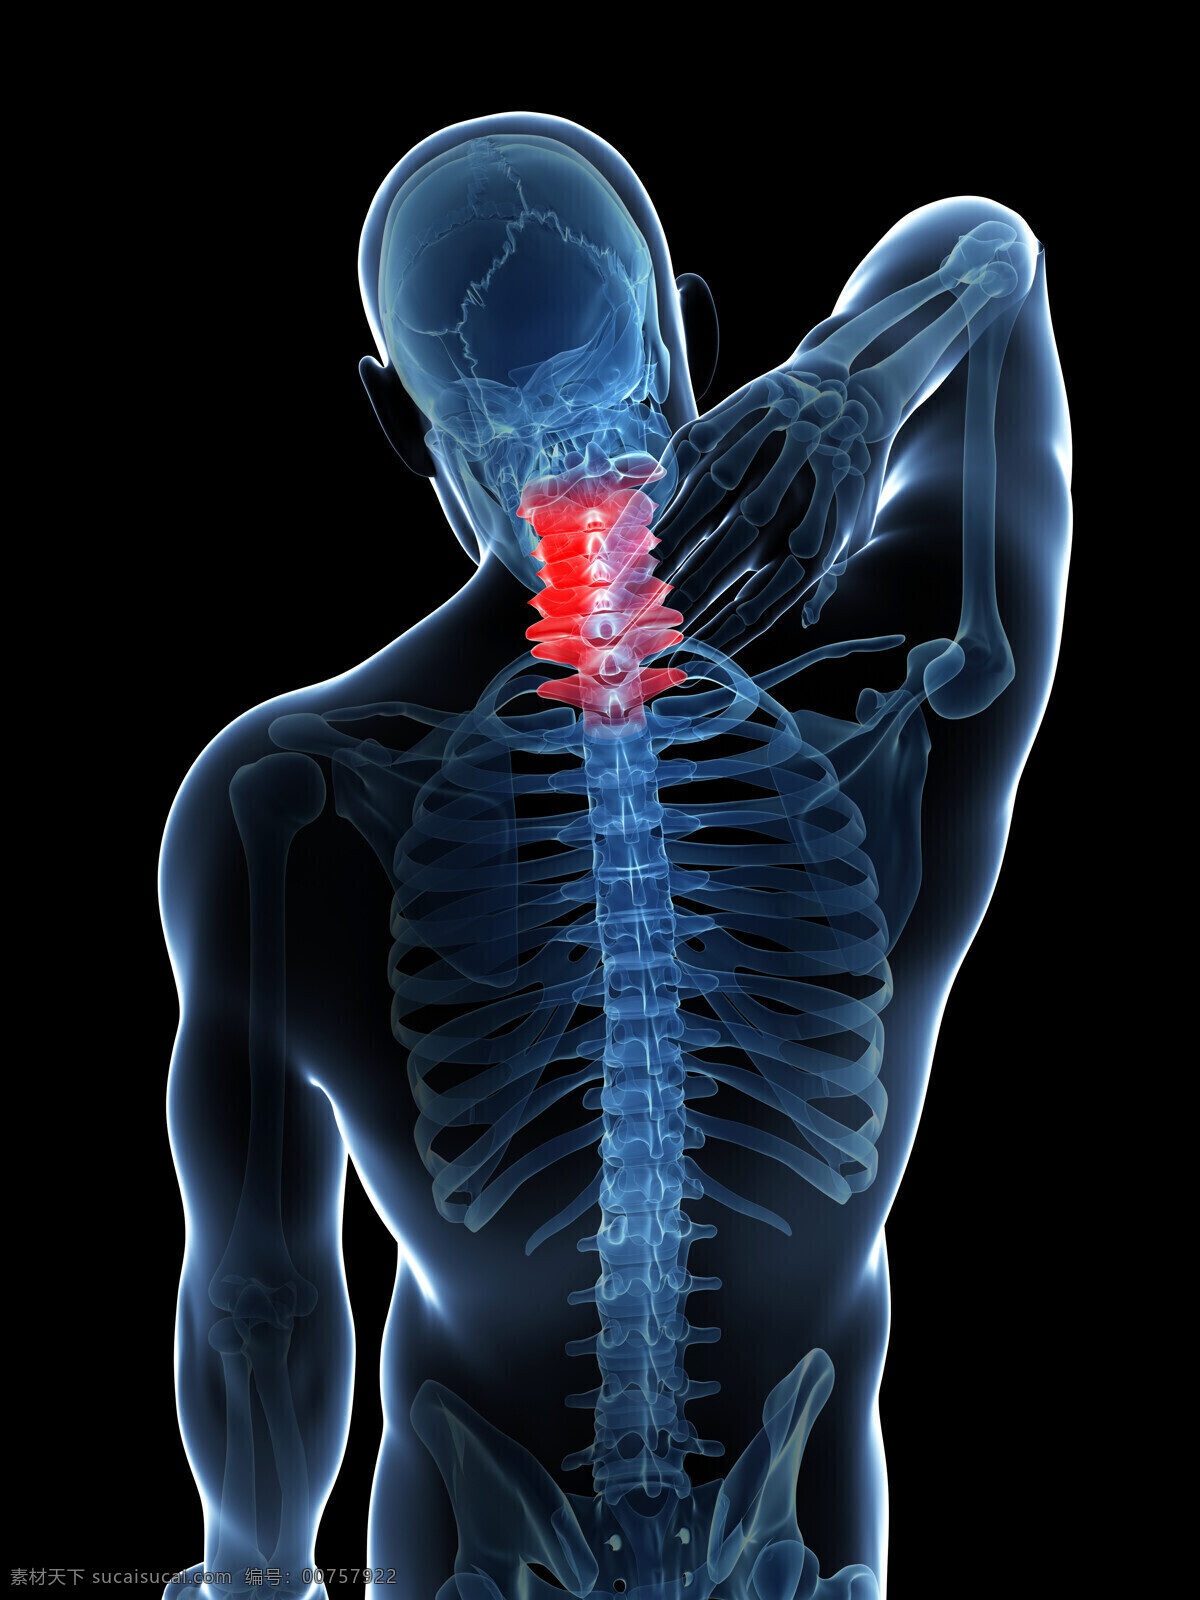 脊椎 疼痛 脊椎疼痛 颈椎病 腰椎 头痛 人体器官 男性器官 骨架 骨骼 其他人物 人物图片